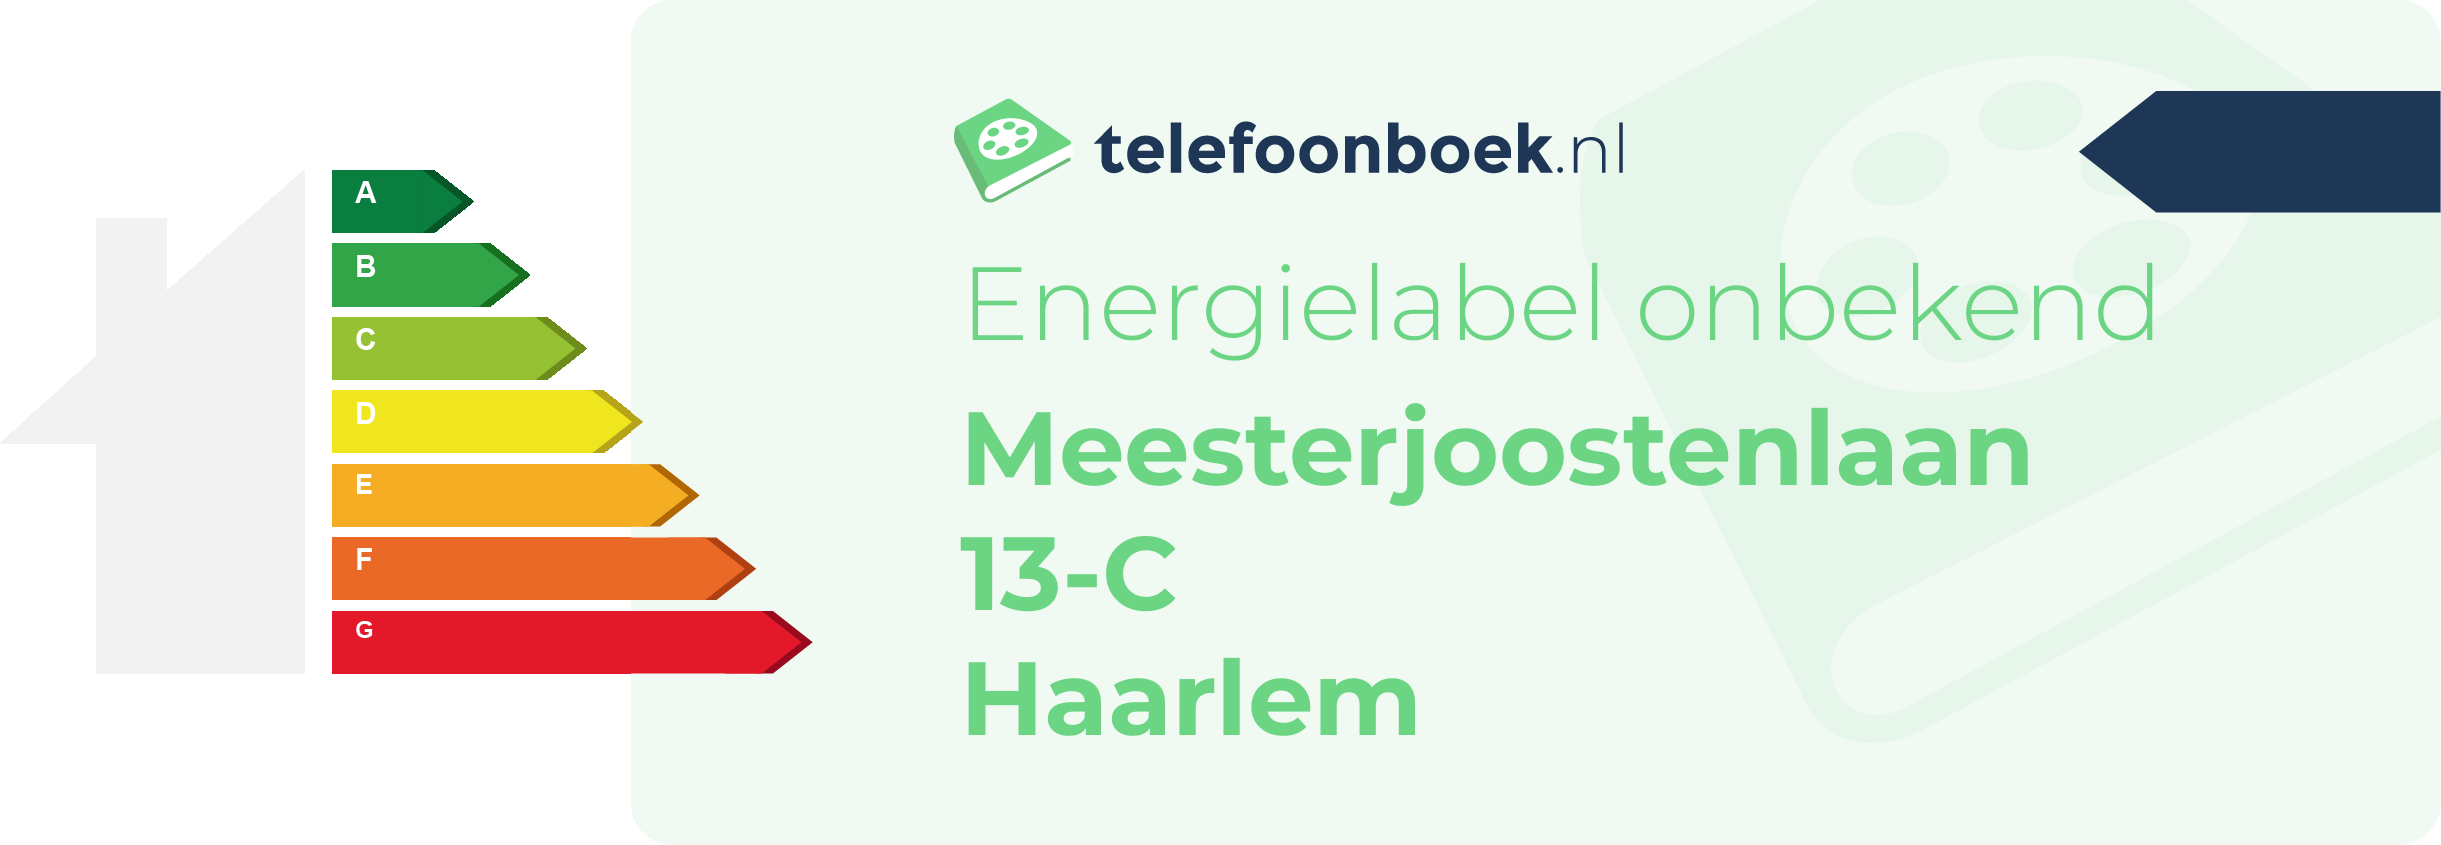 Energielabel Meesterjoostenlaan 13-C Haarlem